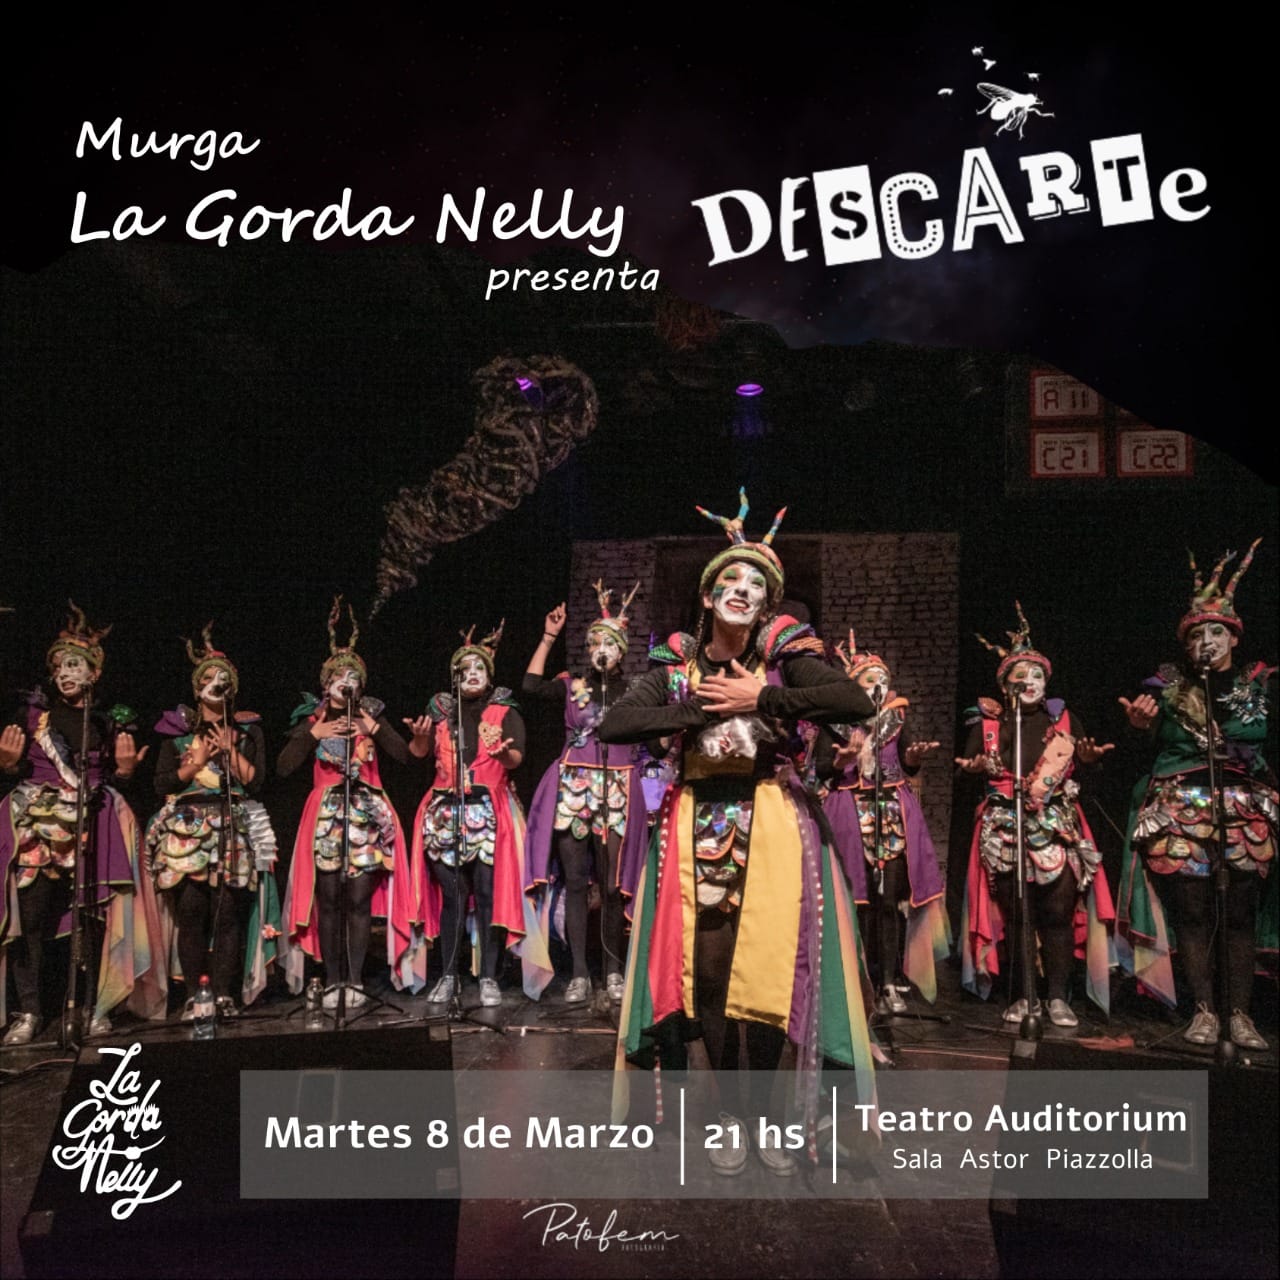 Gratis y en el Auditorium: Murga La Gorda Nelly presenta su nueva "Descarte"